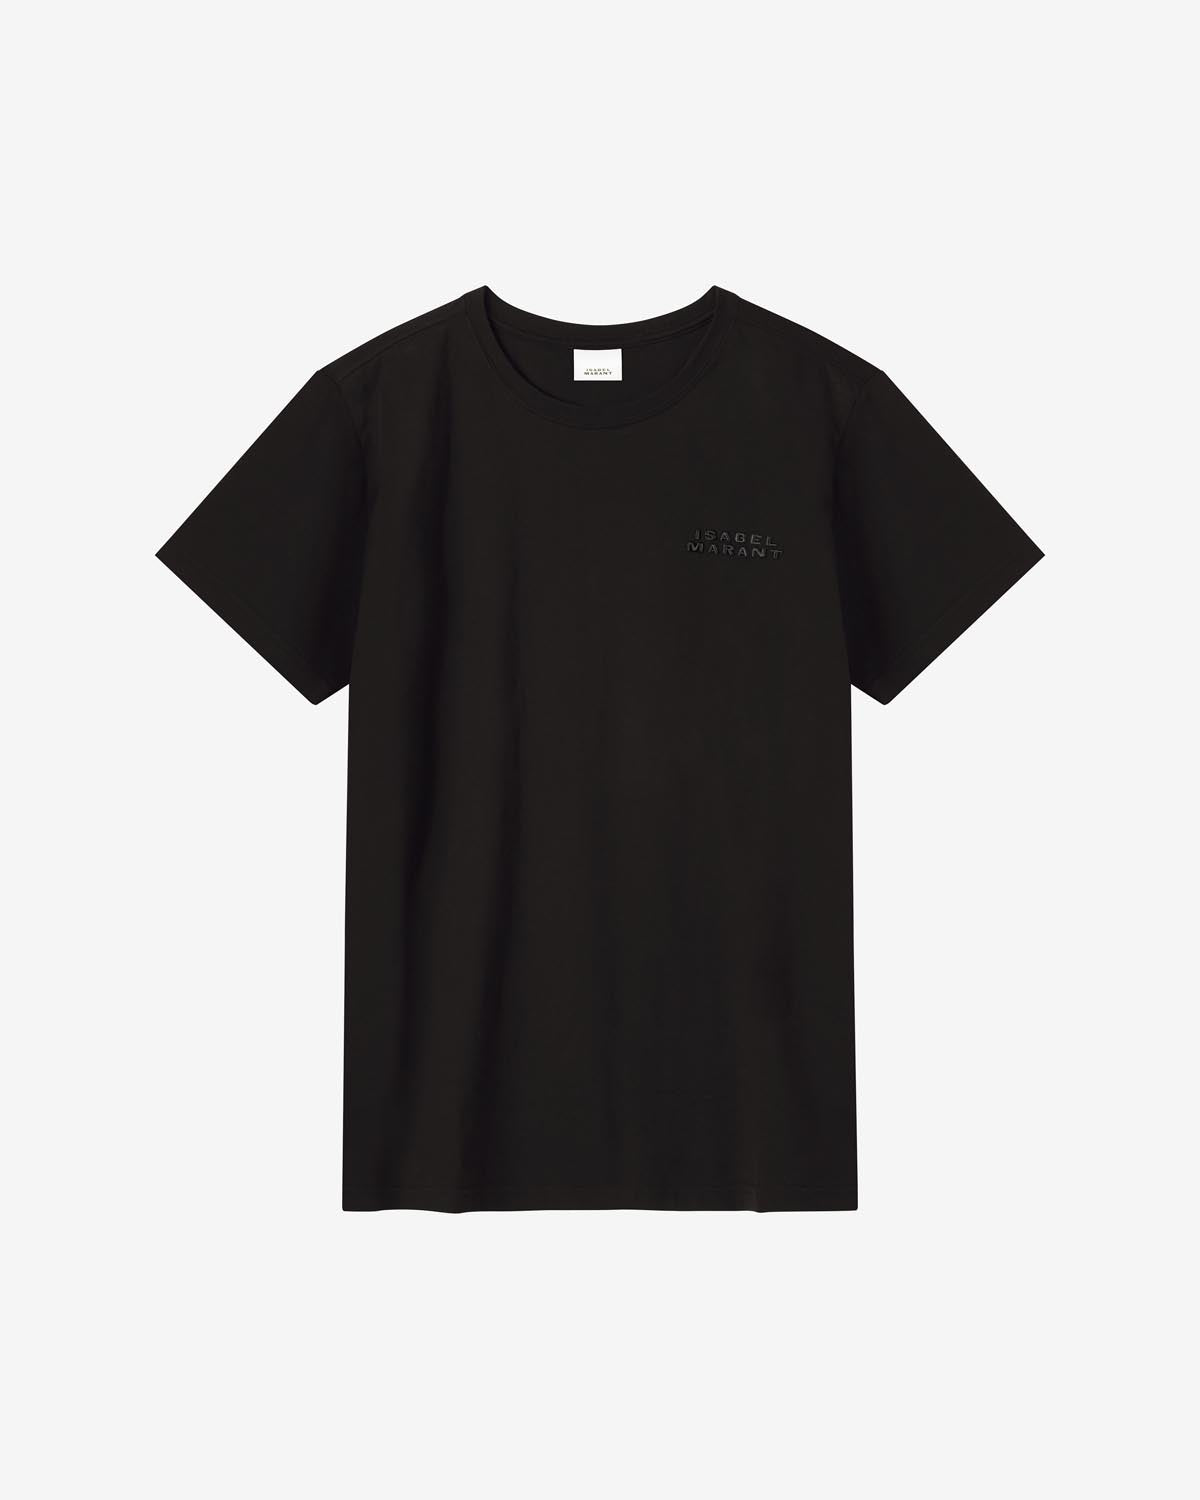 Vidal ロゴ tシャツ Woman 黒 2